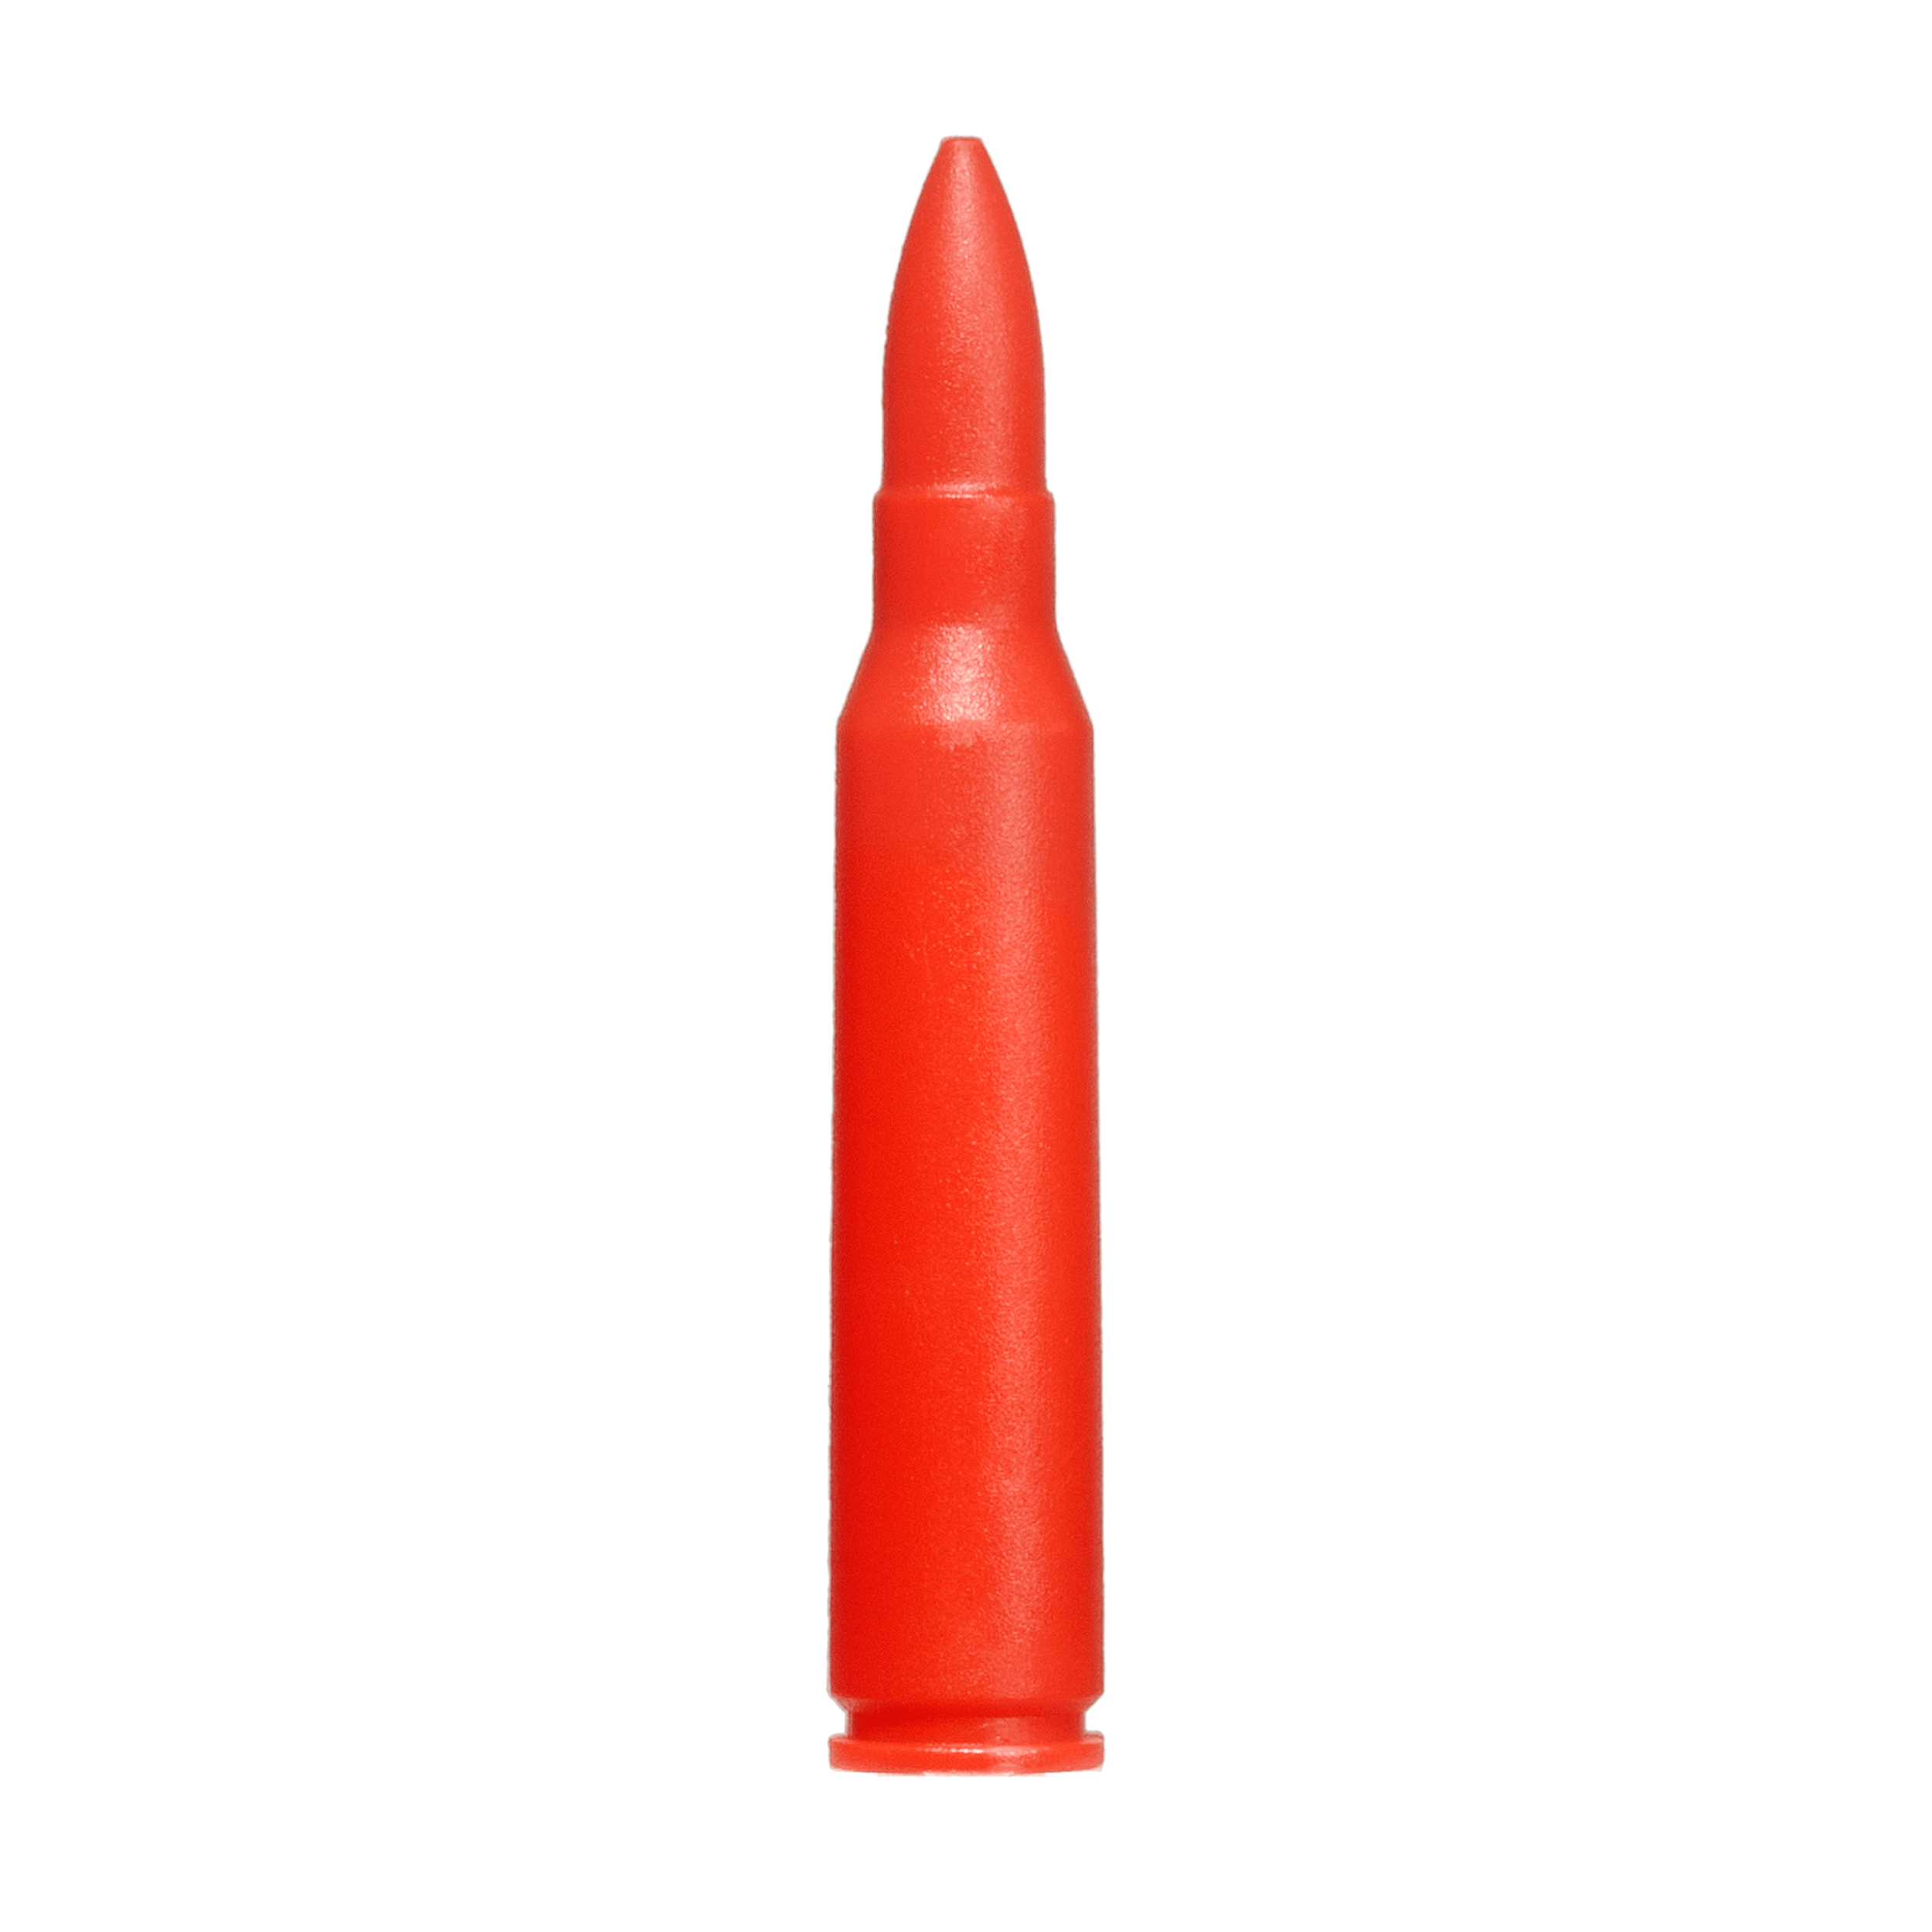 Practice Dummy Ammunition in Calibre 5.56 x 45 mm  / .223 REM (10 Pieces)